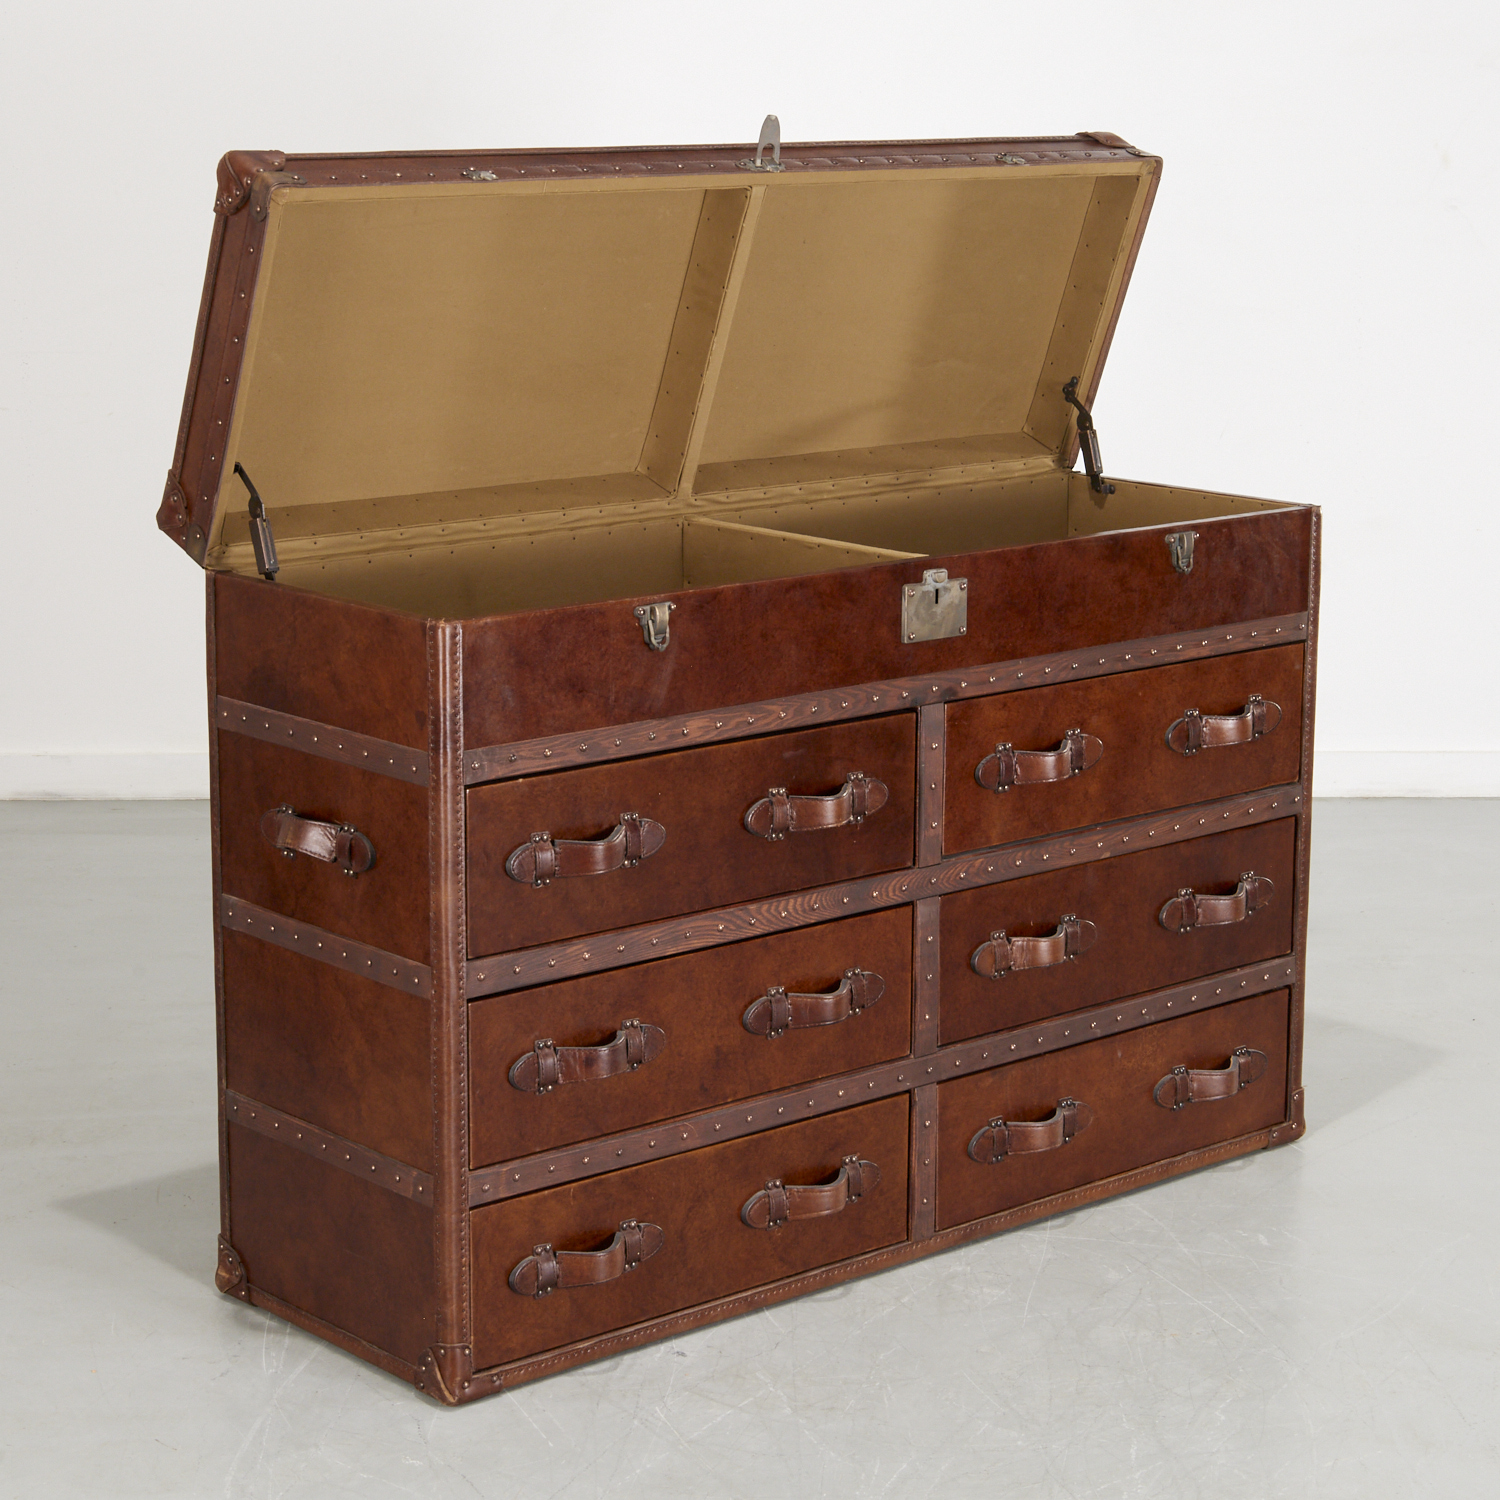 Sold at Auction: Restoration Hardware leather steamer trunk dresser